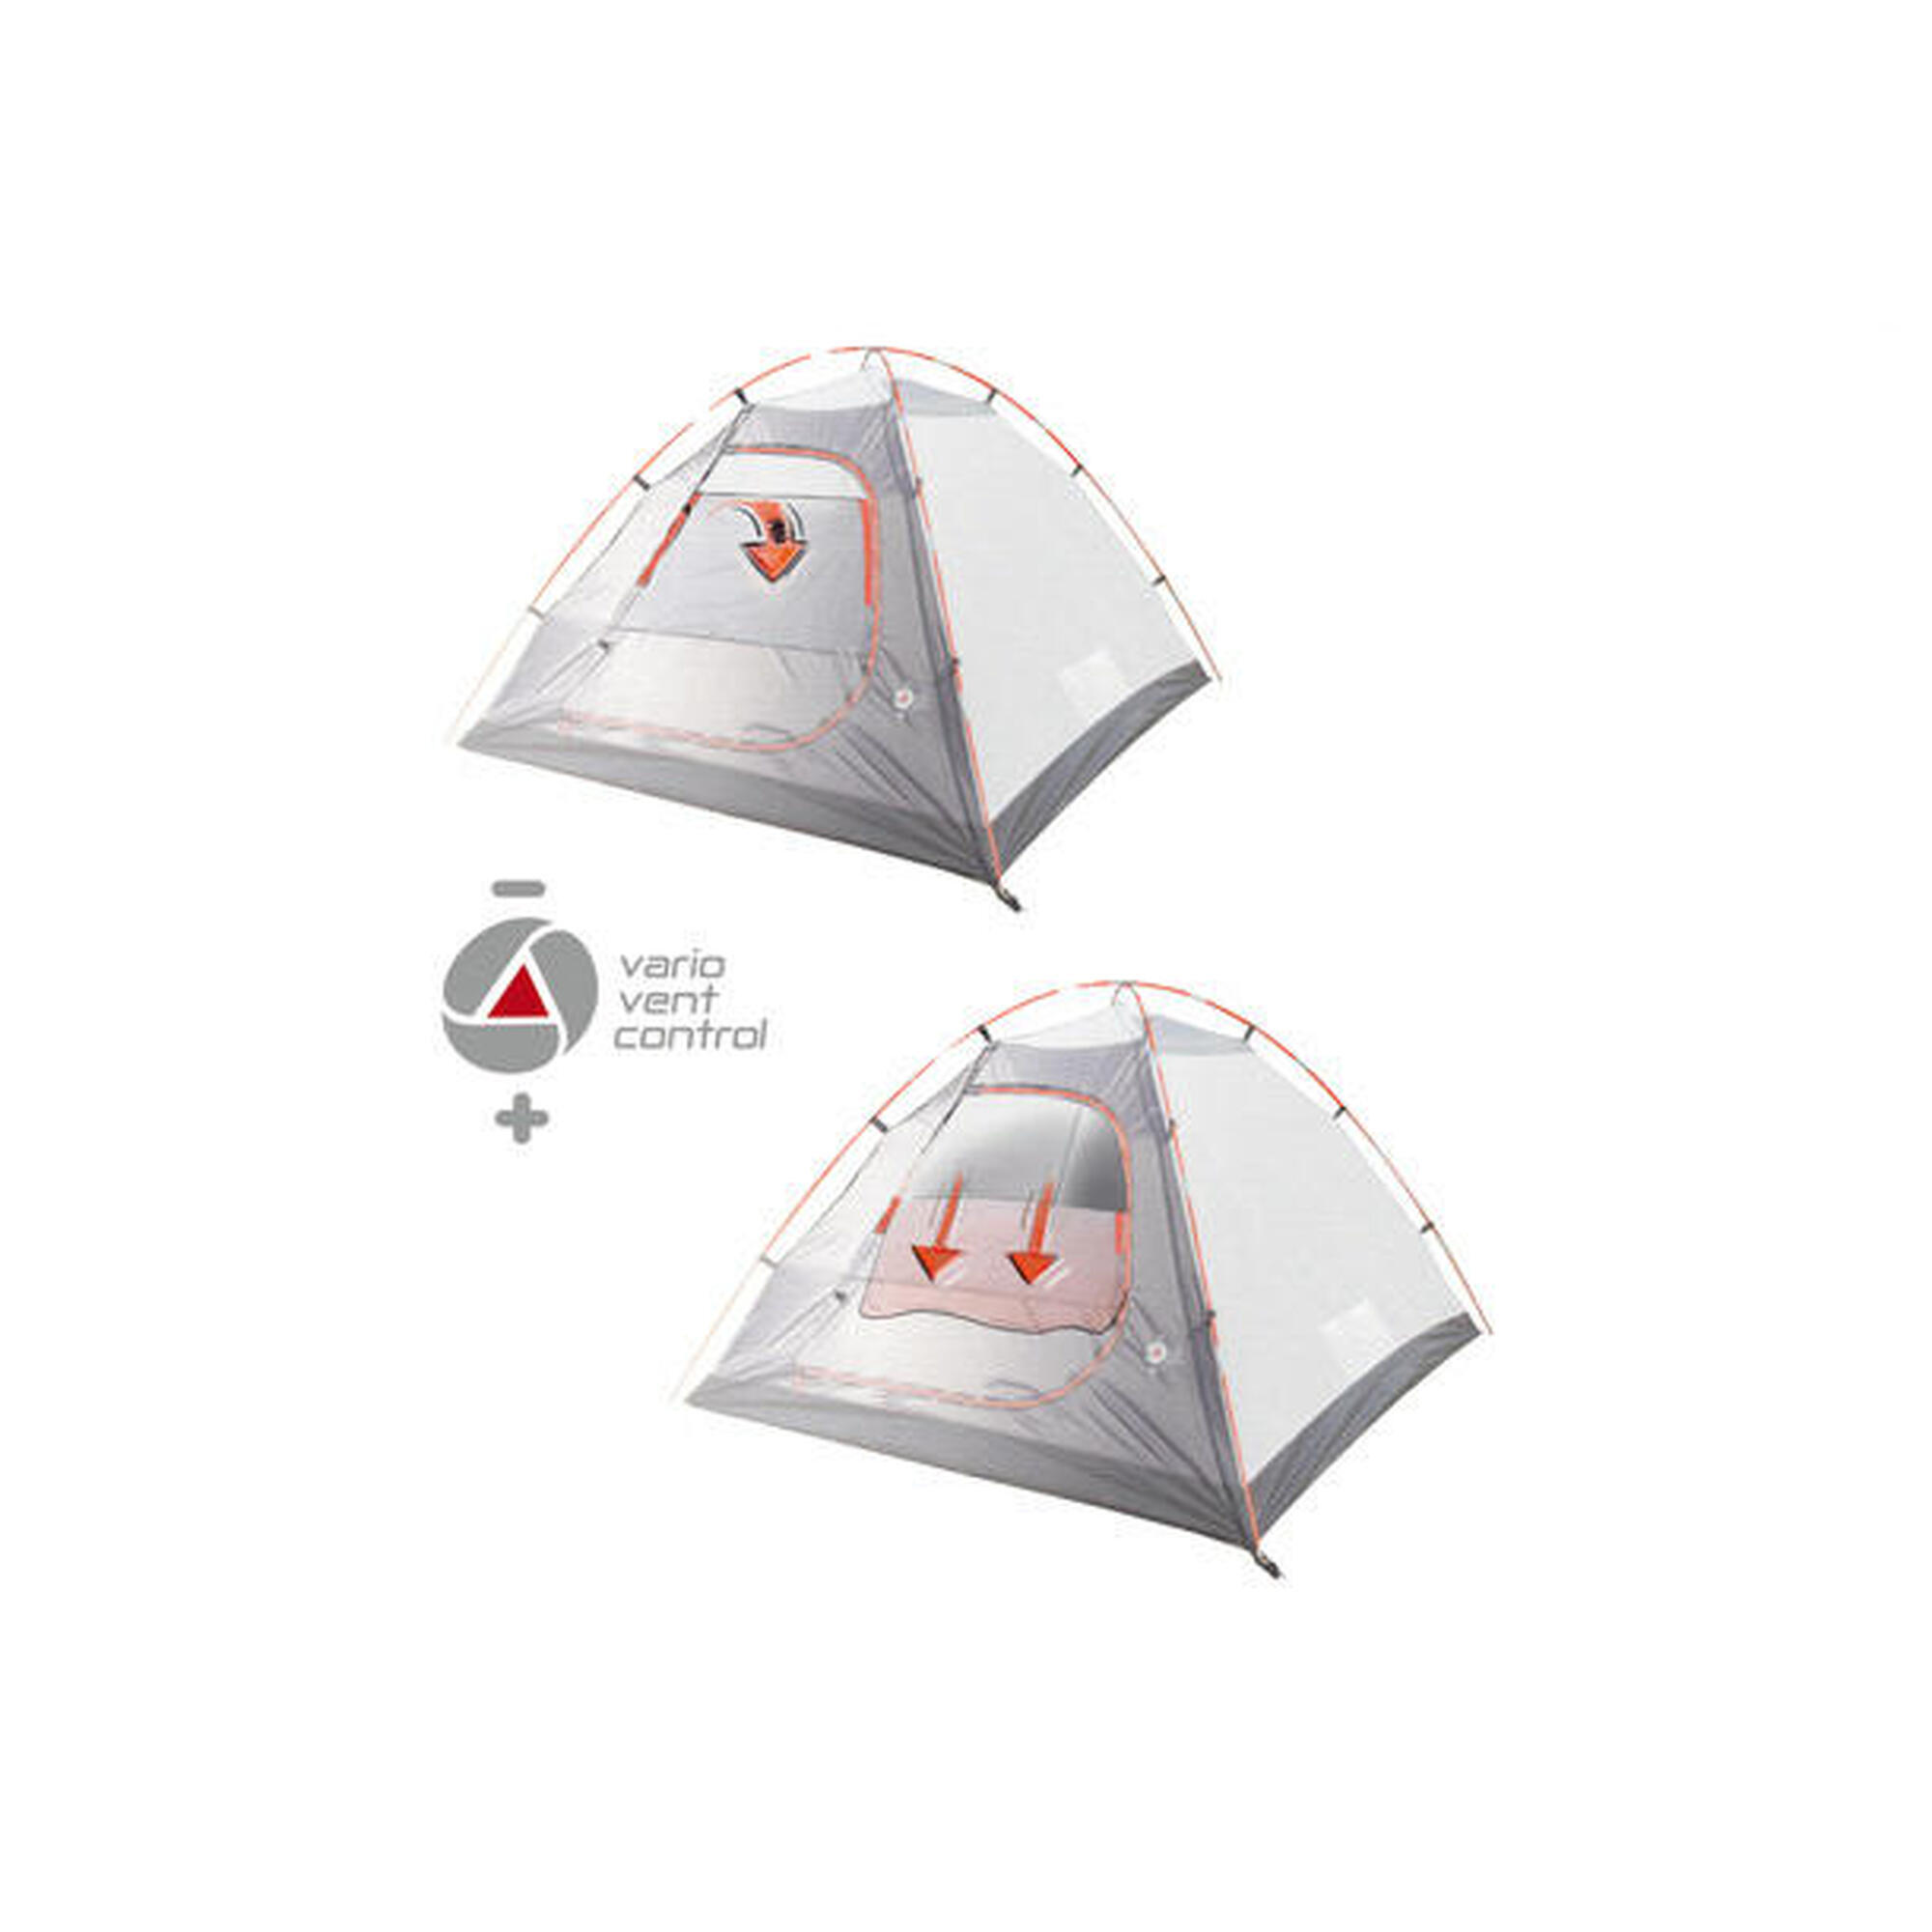 Tenda cúpula High Peak Talos 3, barraca de camping com varanda